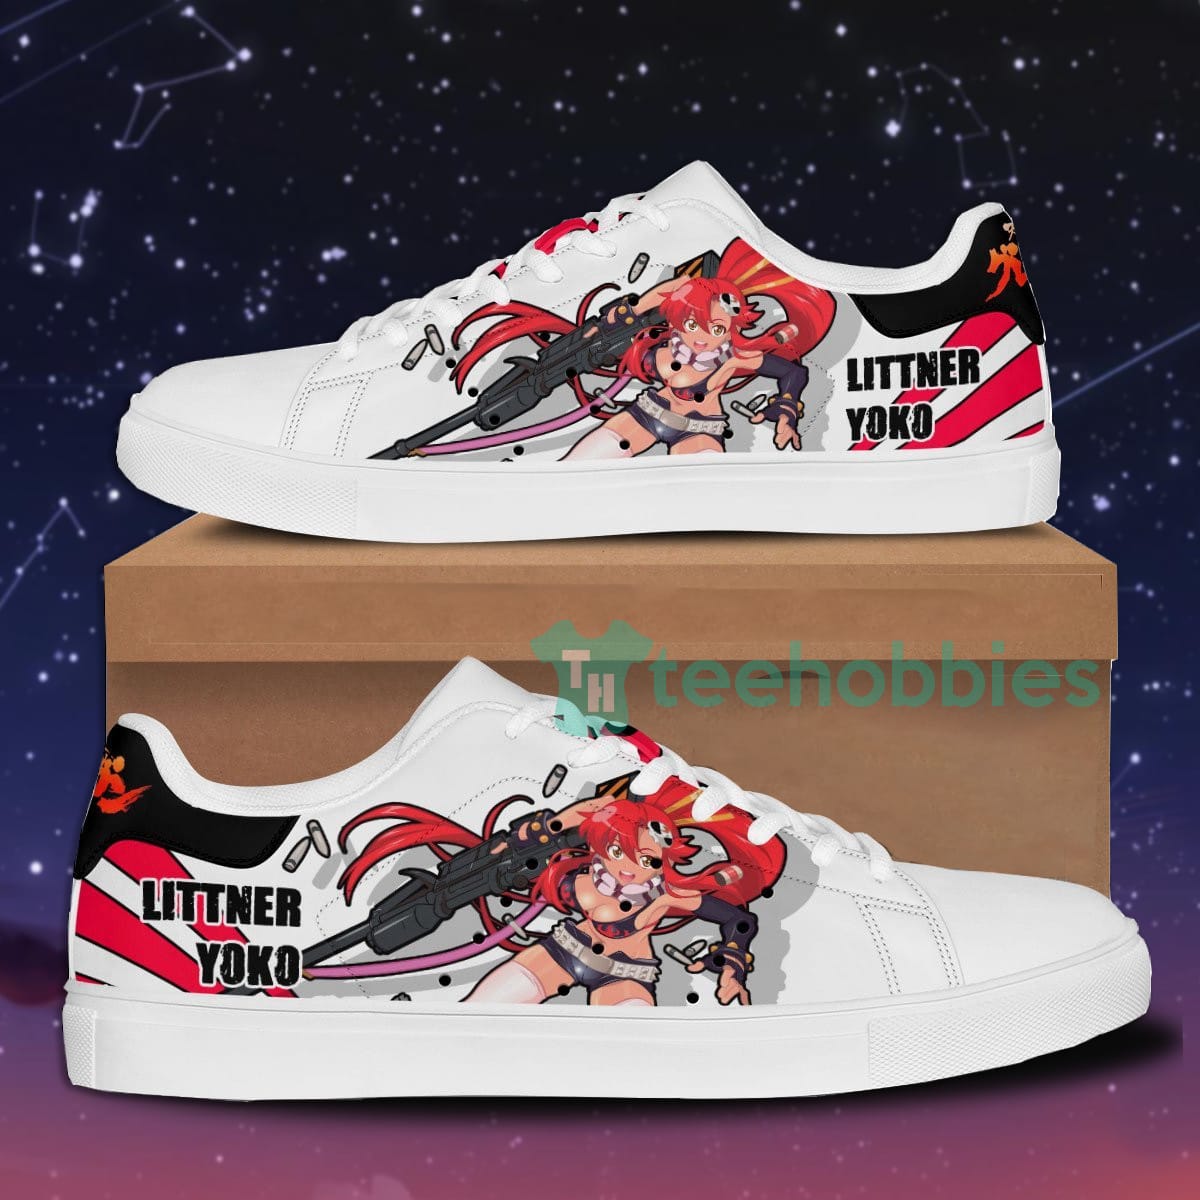 Yoko Littner Custom Tengen Toppa Gurren Lagann Anime Skate Shoes For Men And Women